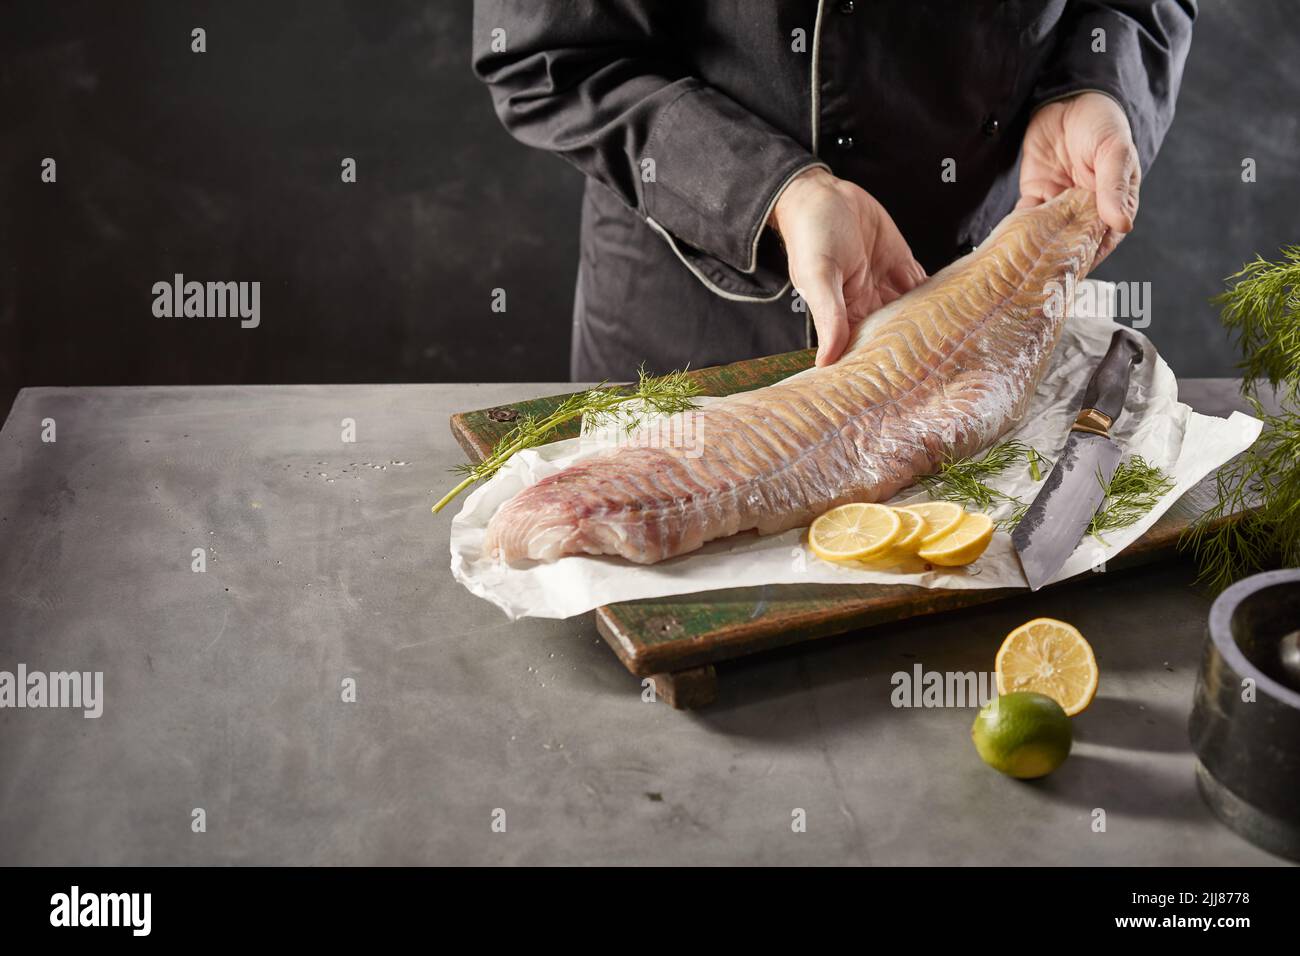 Alto ángulo de cultivo sin rostro macho cocinero de pie en la mesa con filete de pescado fresco crudo en la cocina Foto de stock